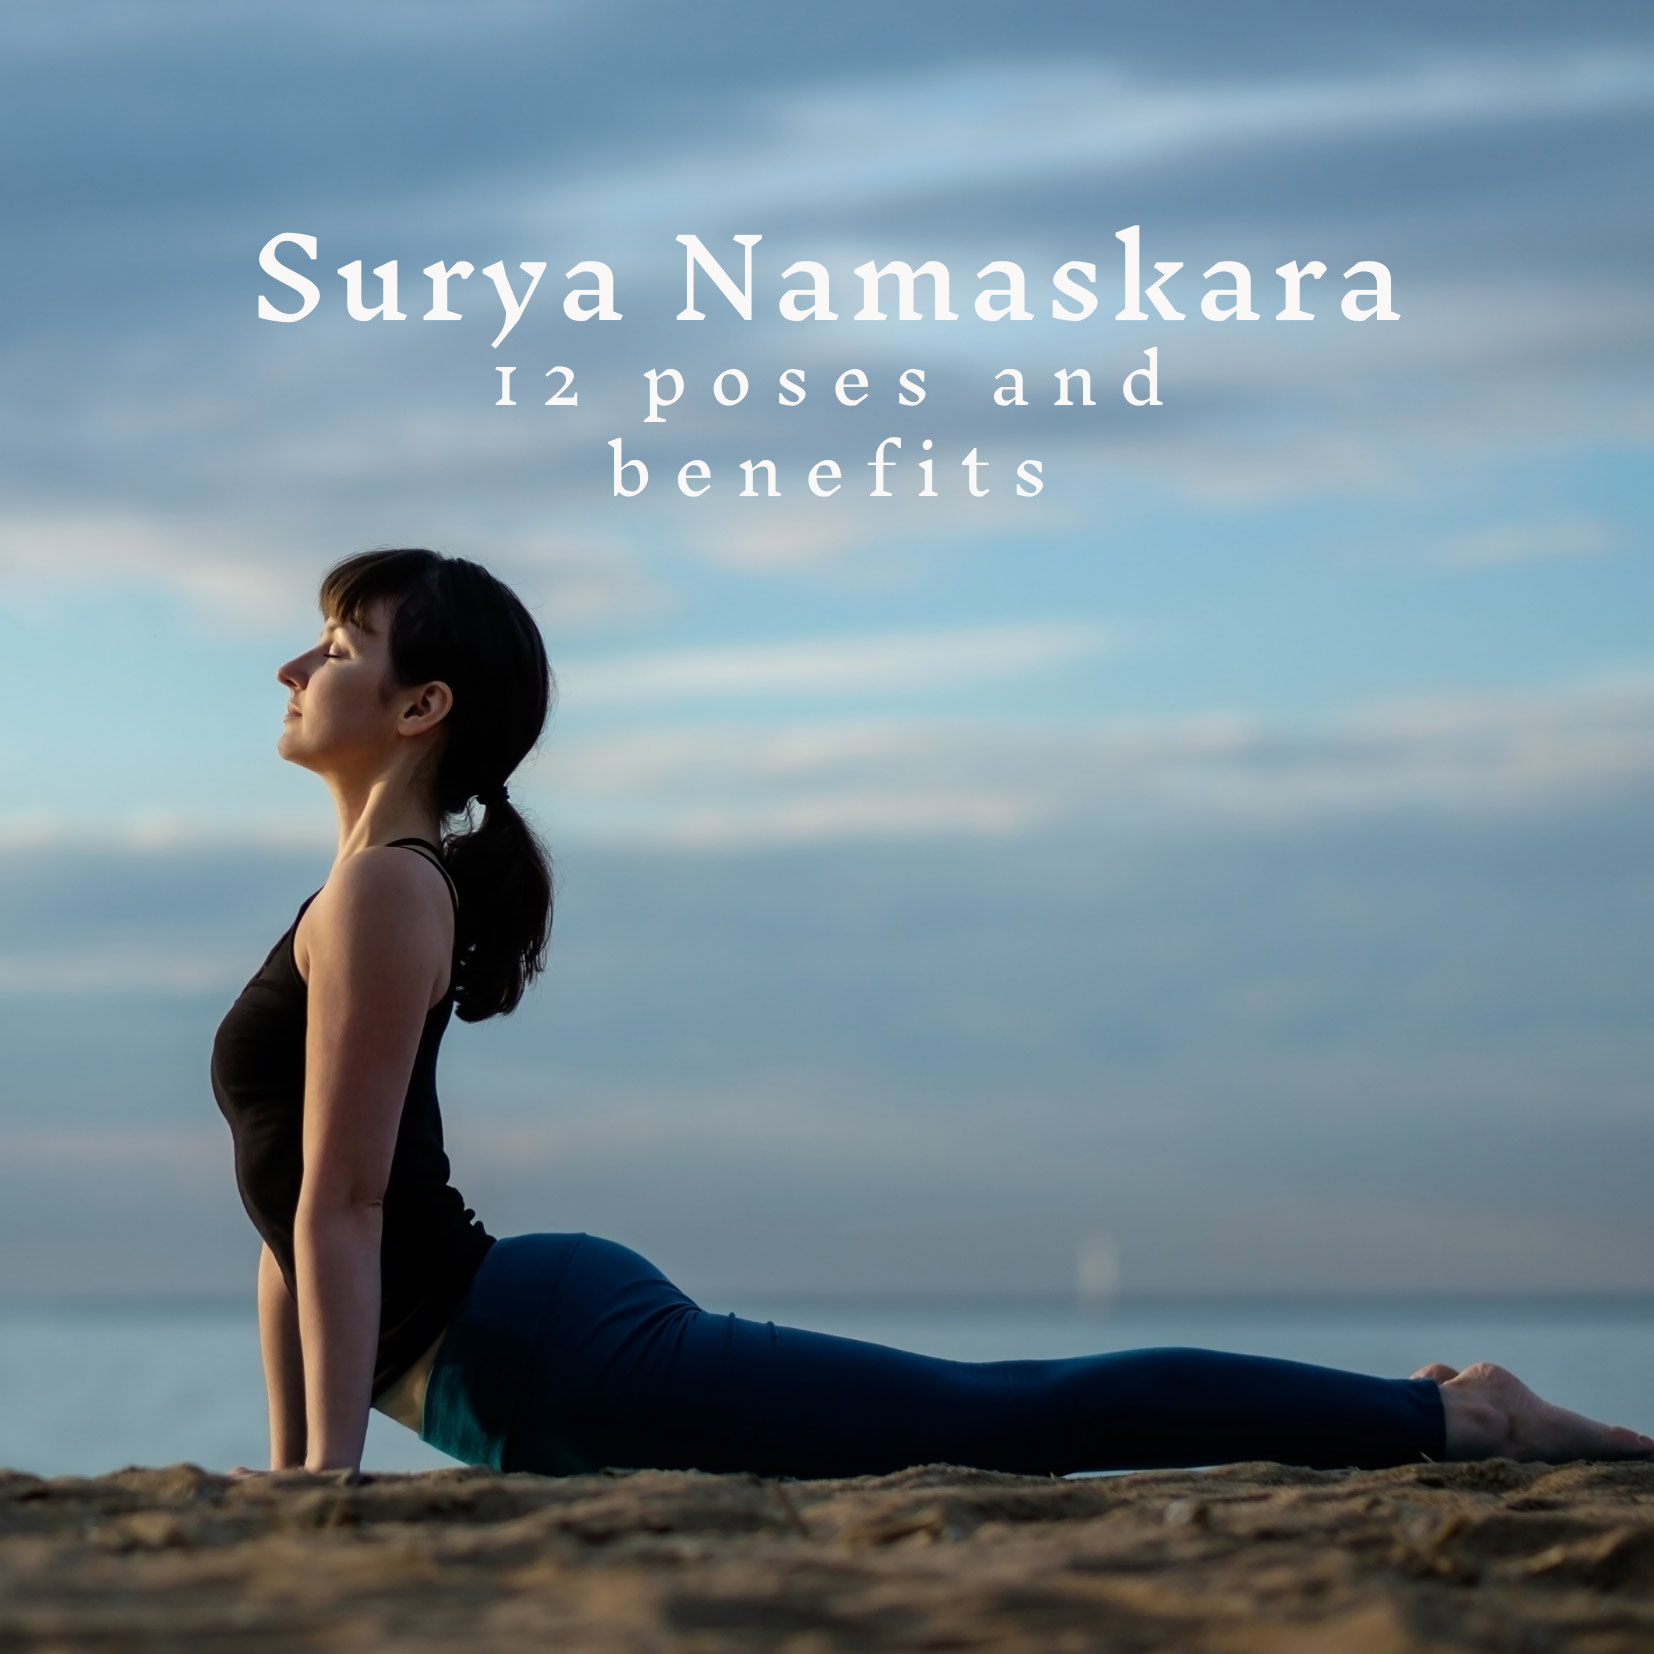 Yoga poses surya namaskara Royalty Free Vector Image